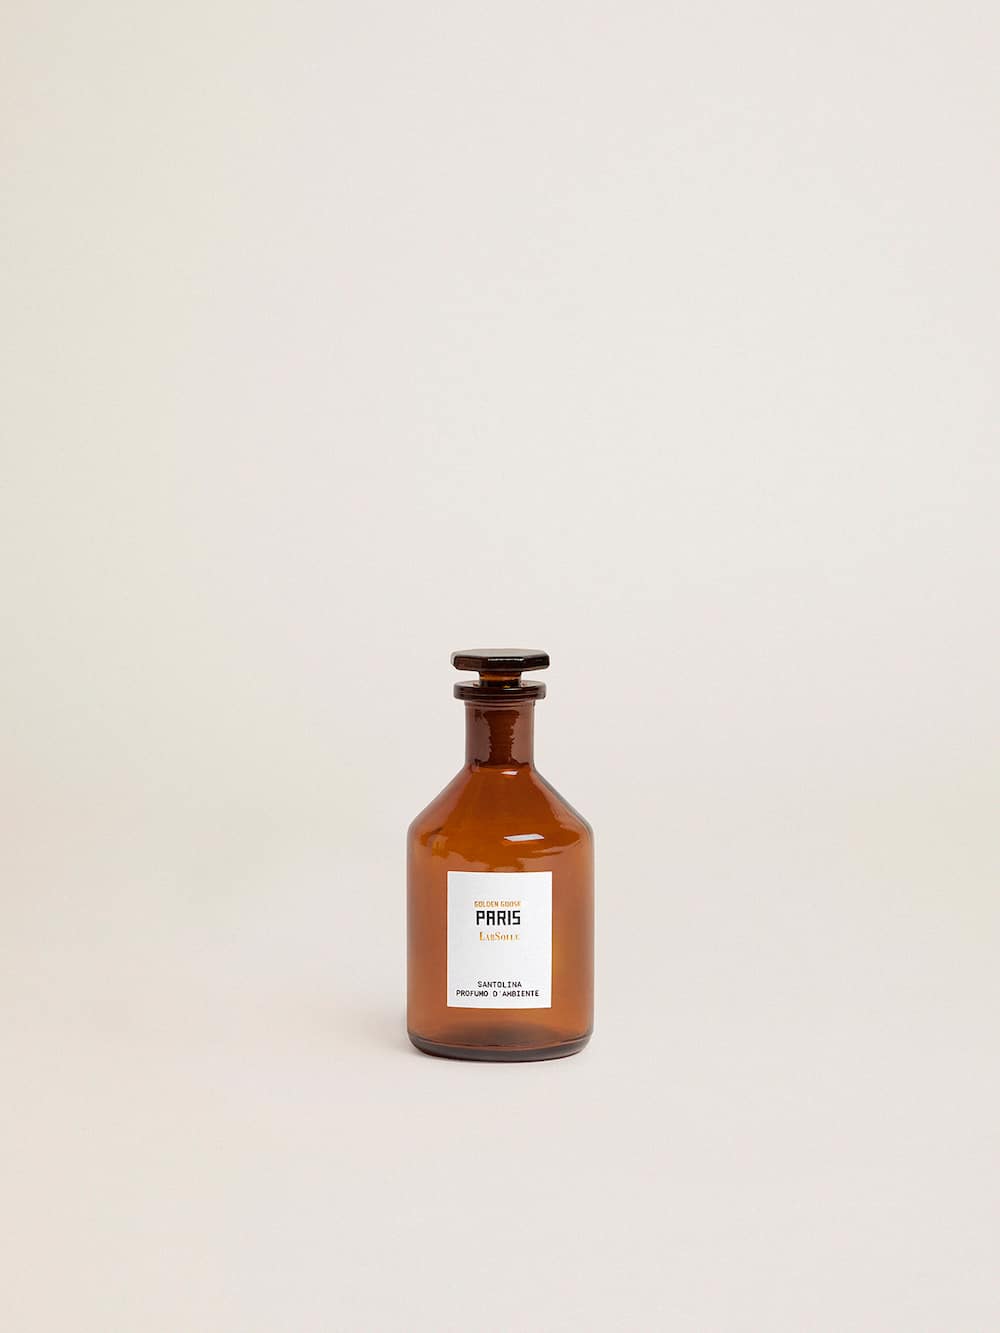 Golden Goose - Paris Essence santoline parfum d’ambiance 100 ml in 